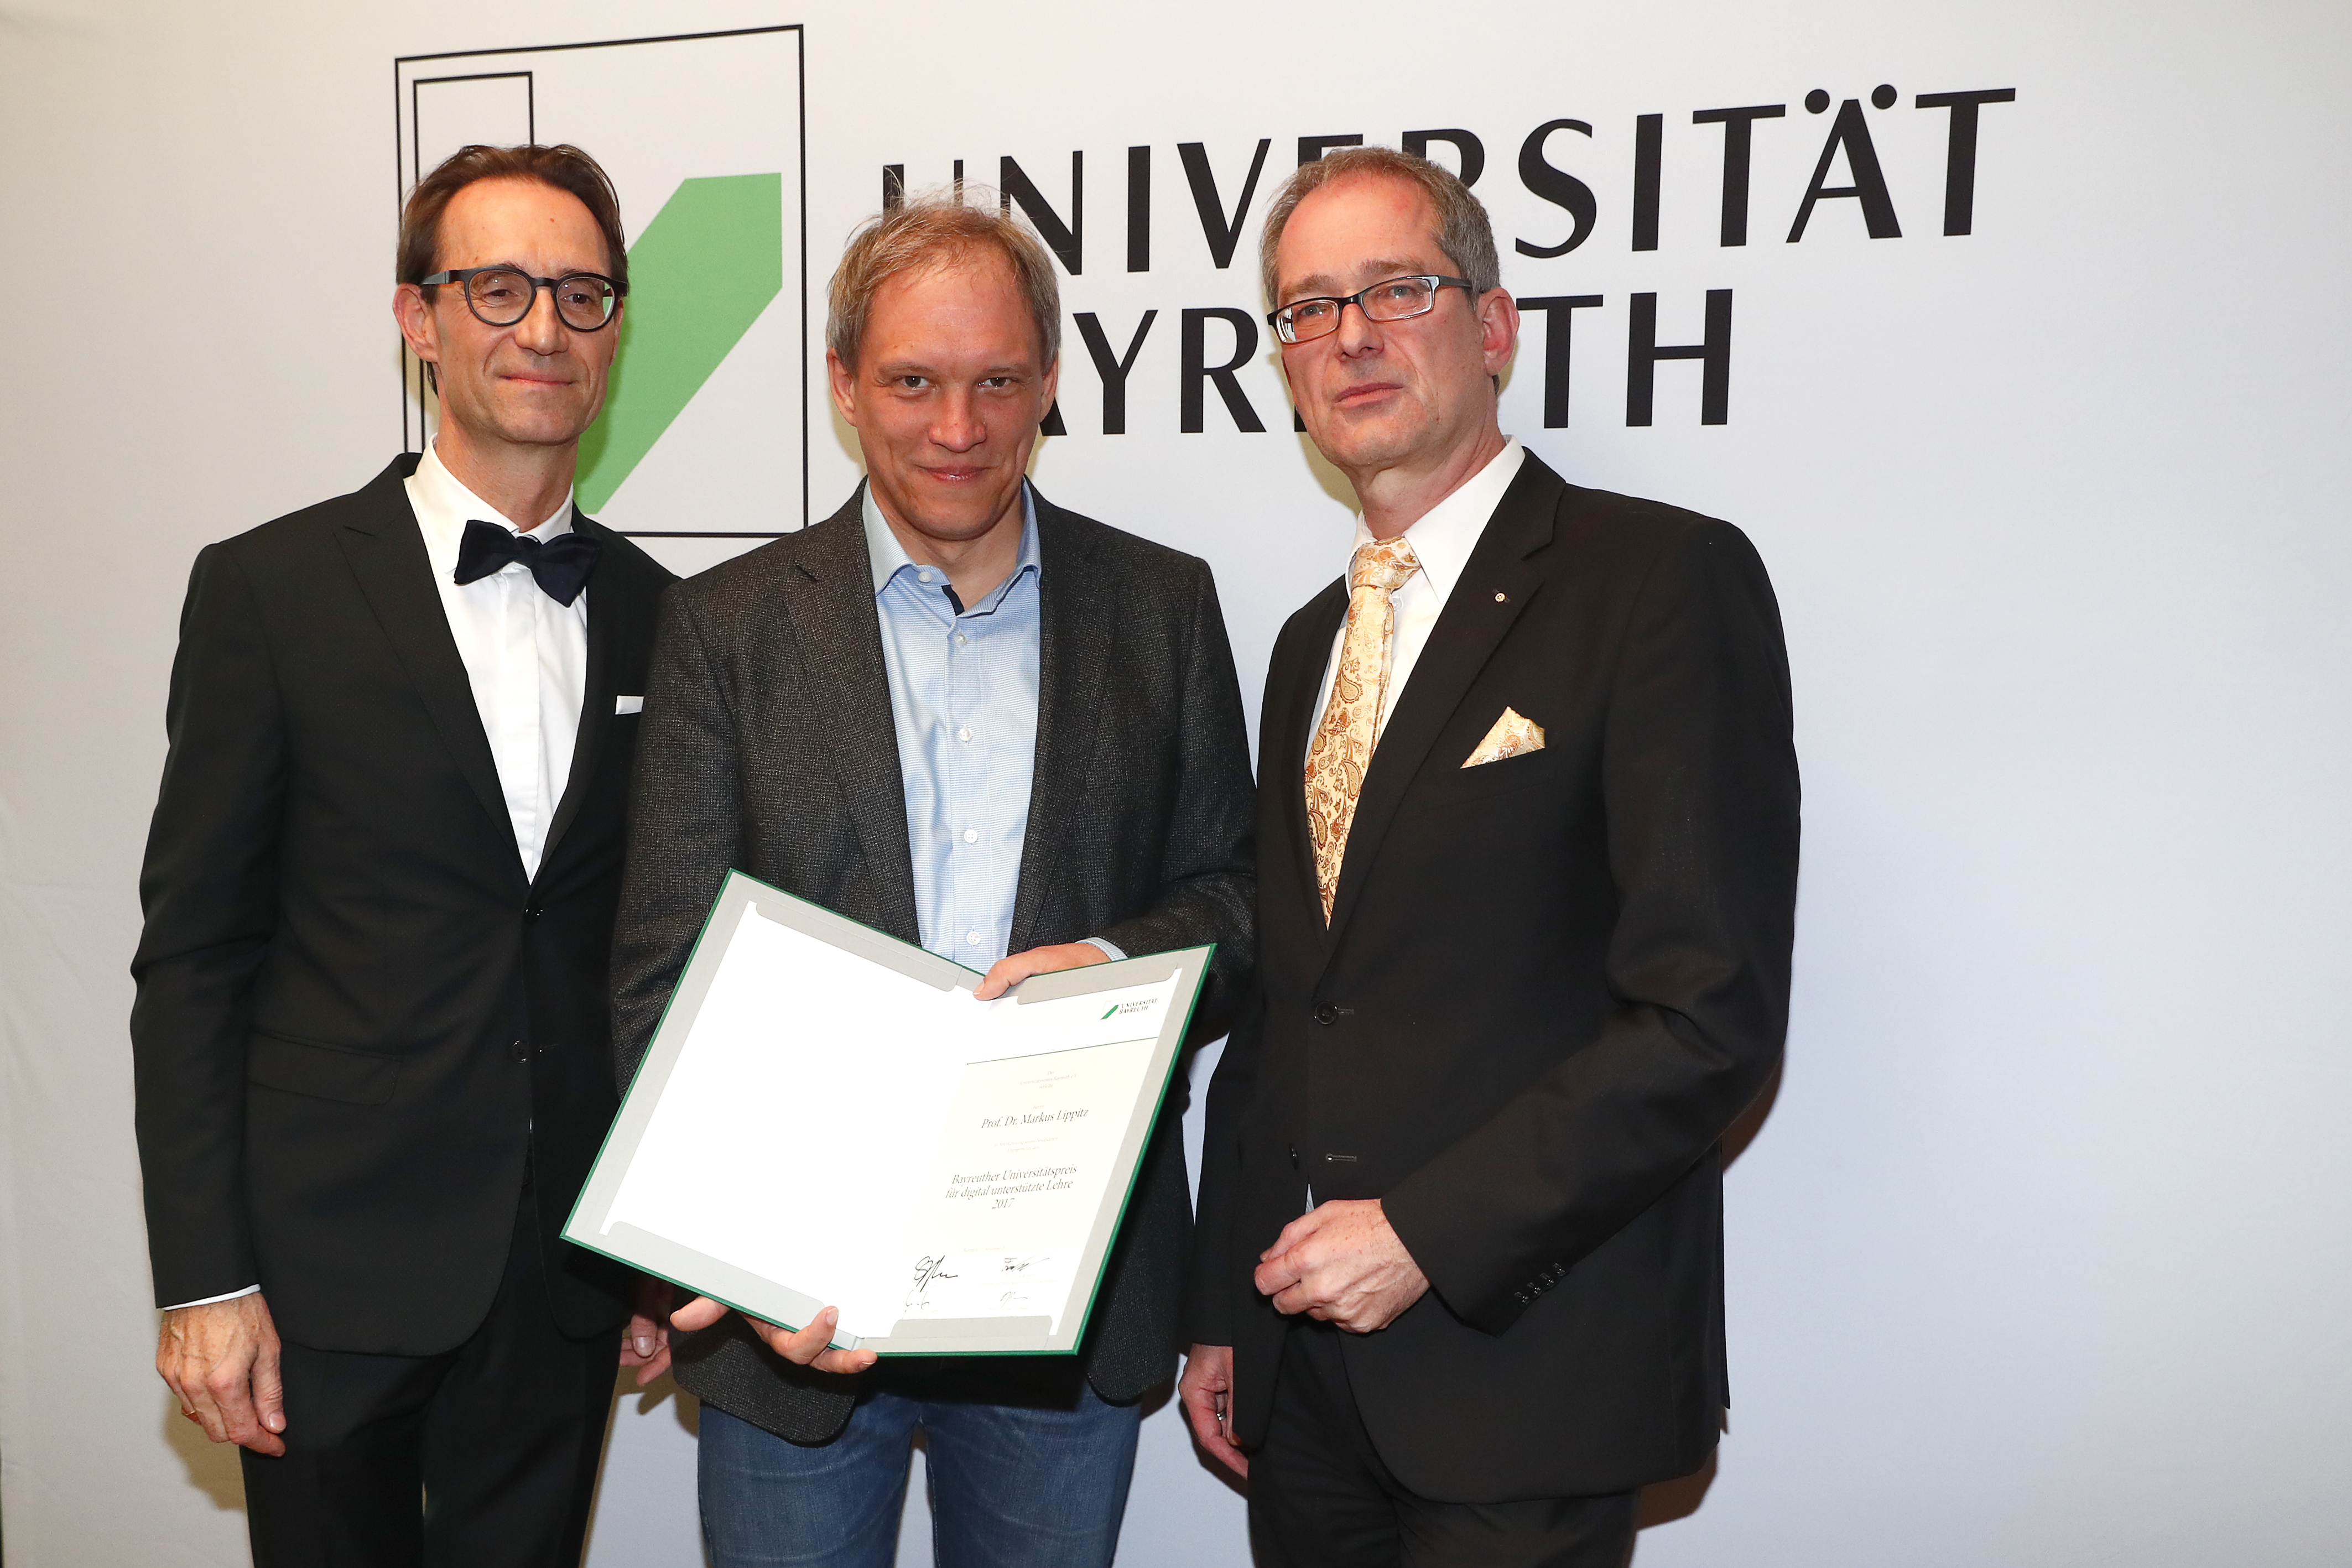 Verleihung des Bayreuther Universitätspreis für digital unterstützte Lehre an Professor Dr. Markus Lippitz durch Professor Dr. Martin Huber